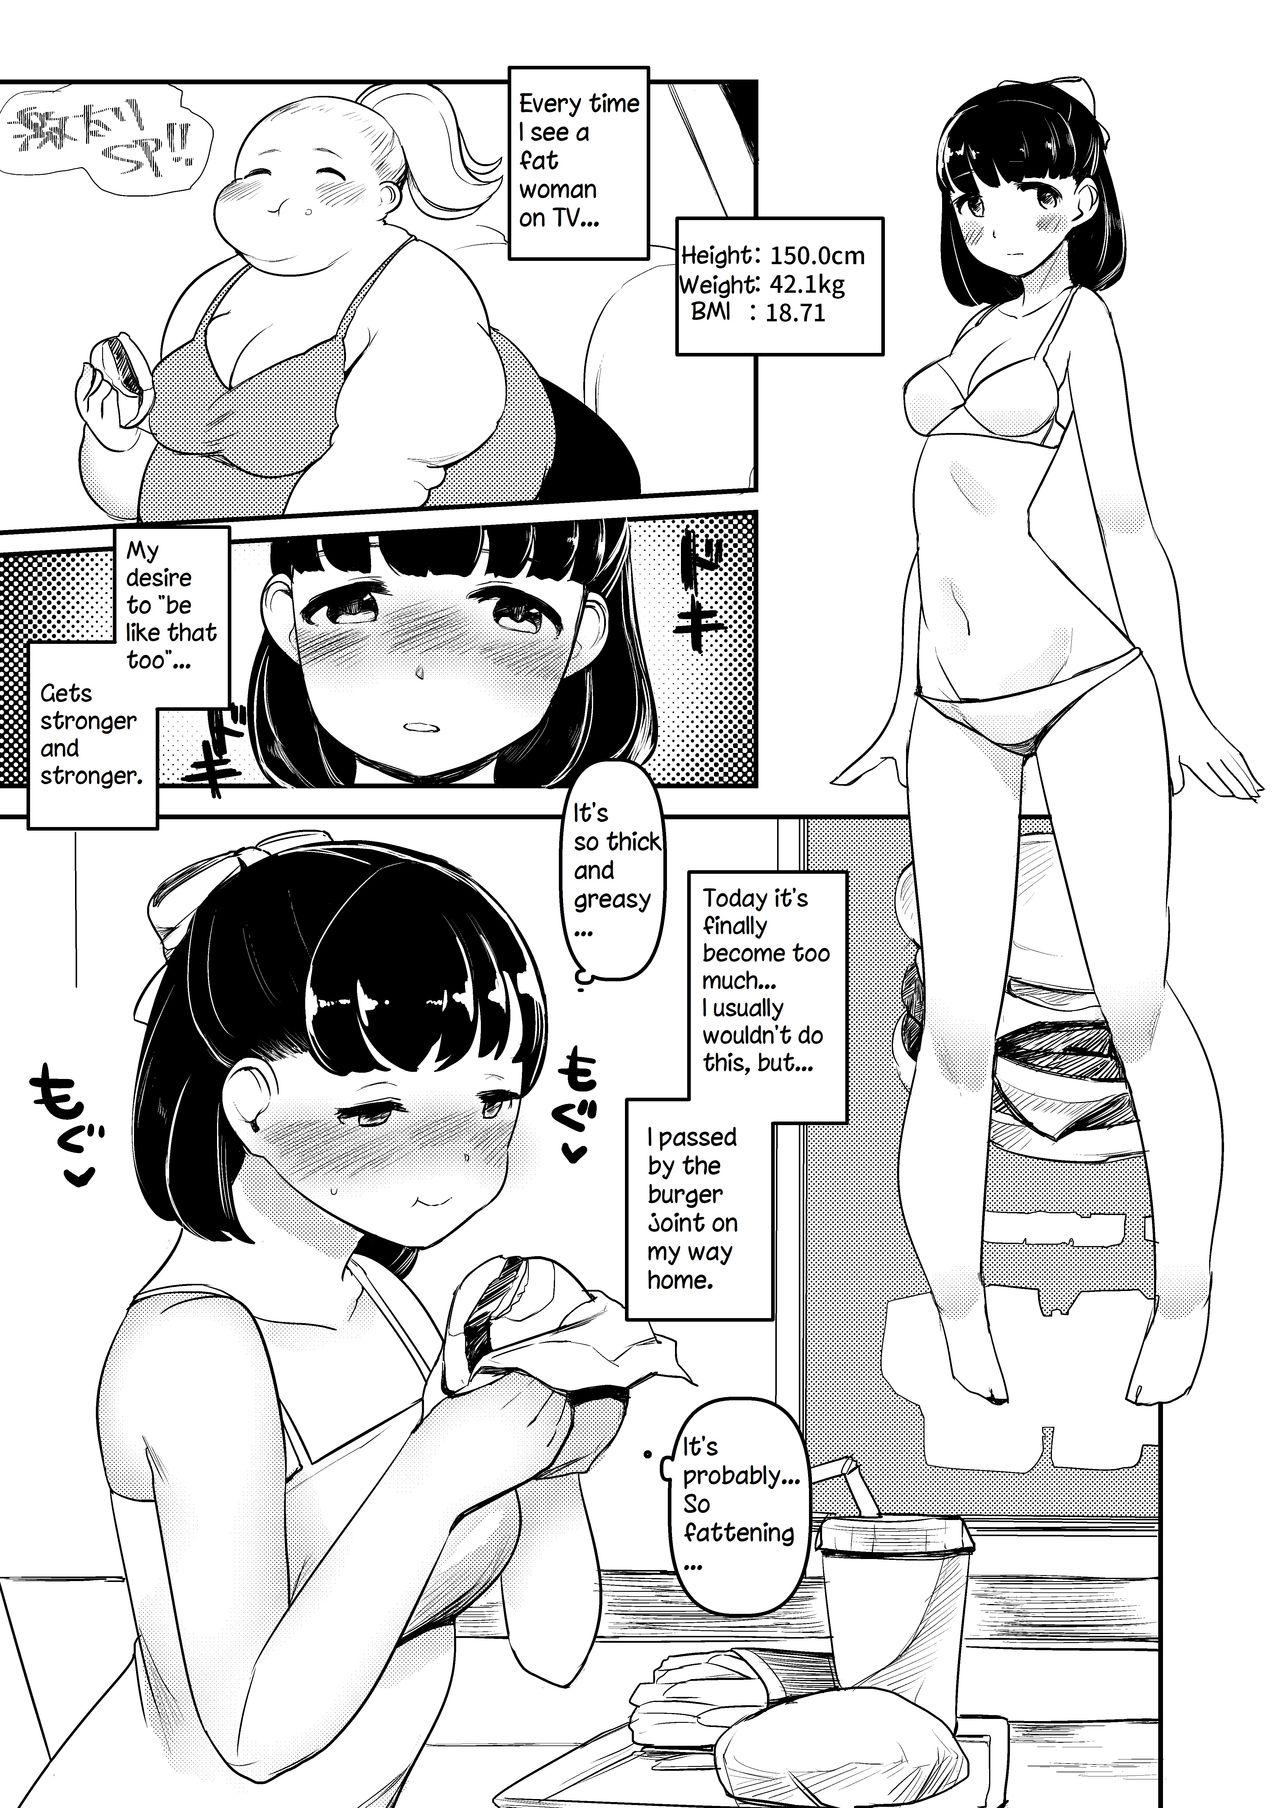 Buttfucking Ayano's Weight Gain Diary Cruising - Page 1